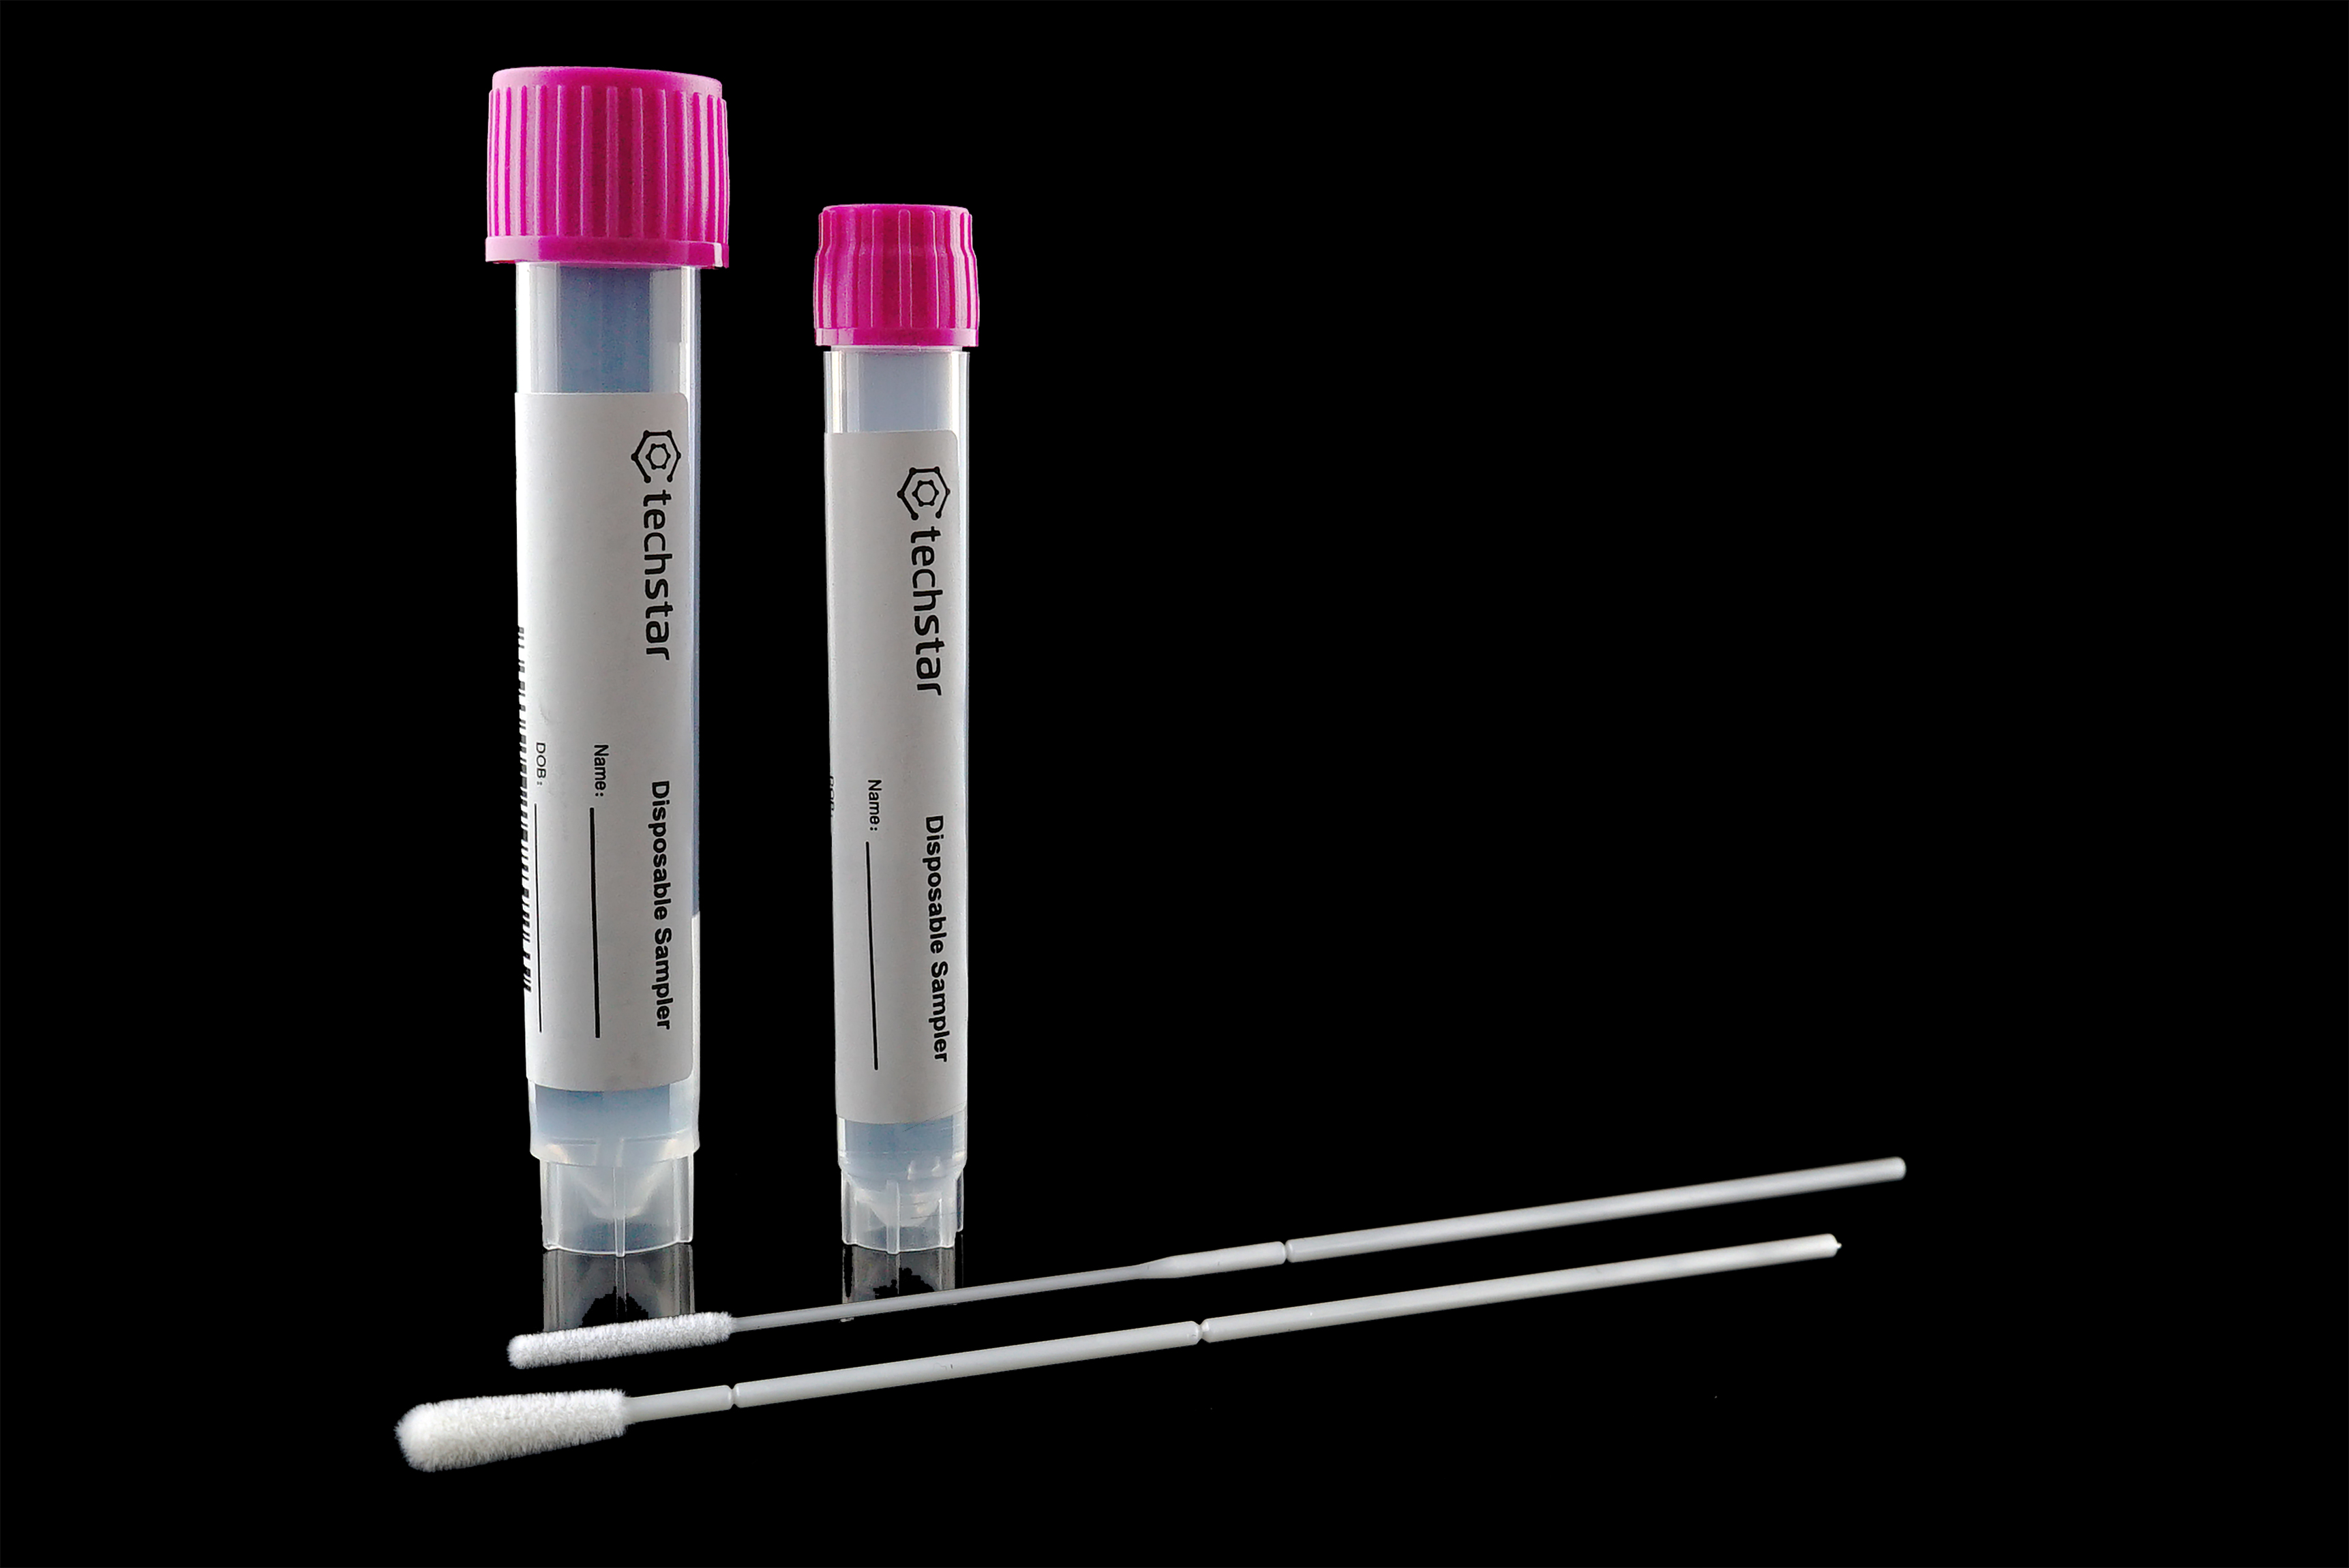 Disposable Sampler for New Coronavirus Detection